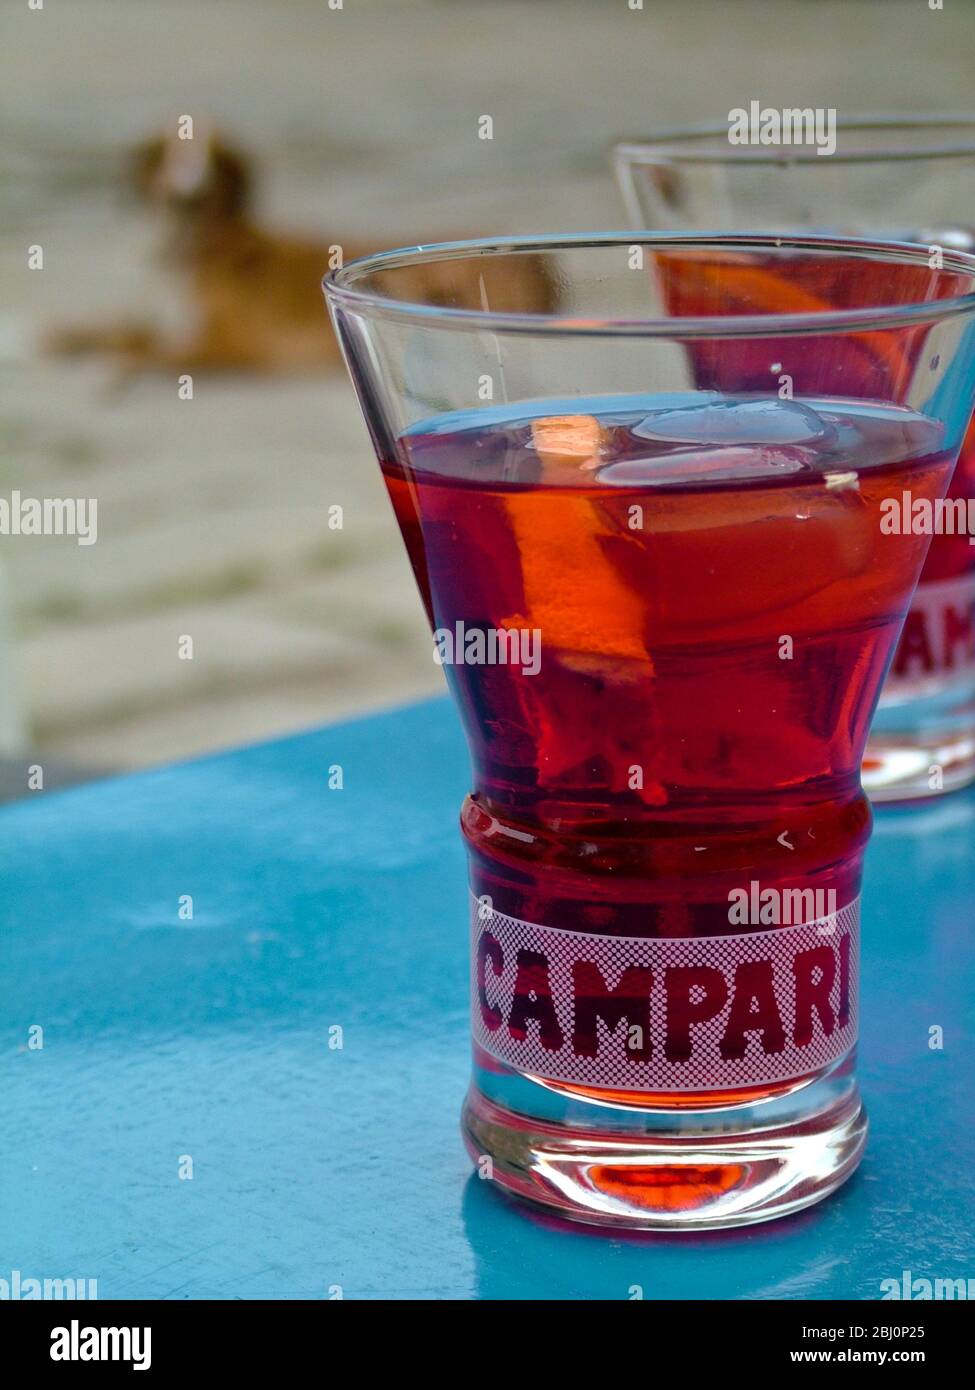 Campari Glas Campari auf Tisch des Freiluftcafes in Italien - ganz in der Nähe der französischen Grenze - mit Hund im Hintergrund. - Stockfoto